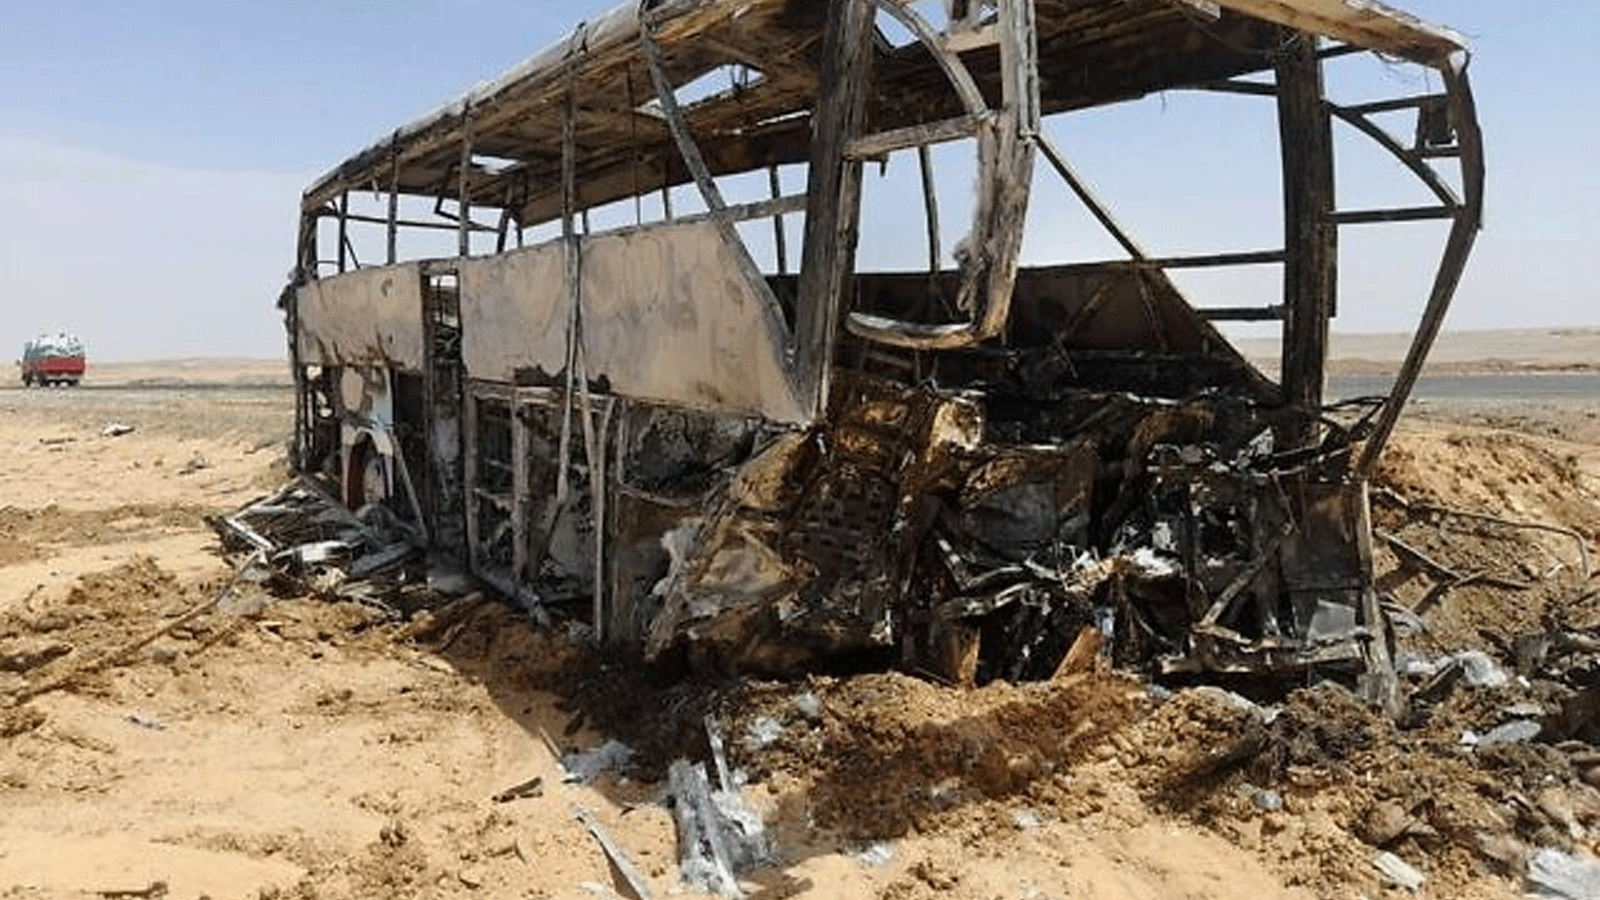 صورة تظهر مشهد حادث حافلة وقع في الساعات الأولى من يوم 13 نيسان\أبريل 2022 عندما اصطدمت السيارة بسيارة أثناء نقلها سياحًا على طريق بين أسوان ومعبد أبو سمبل الشهير جنوبًا.